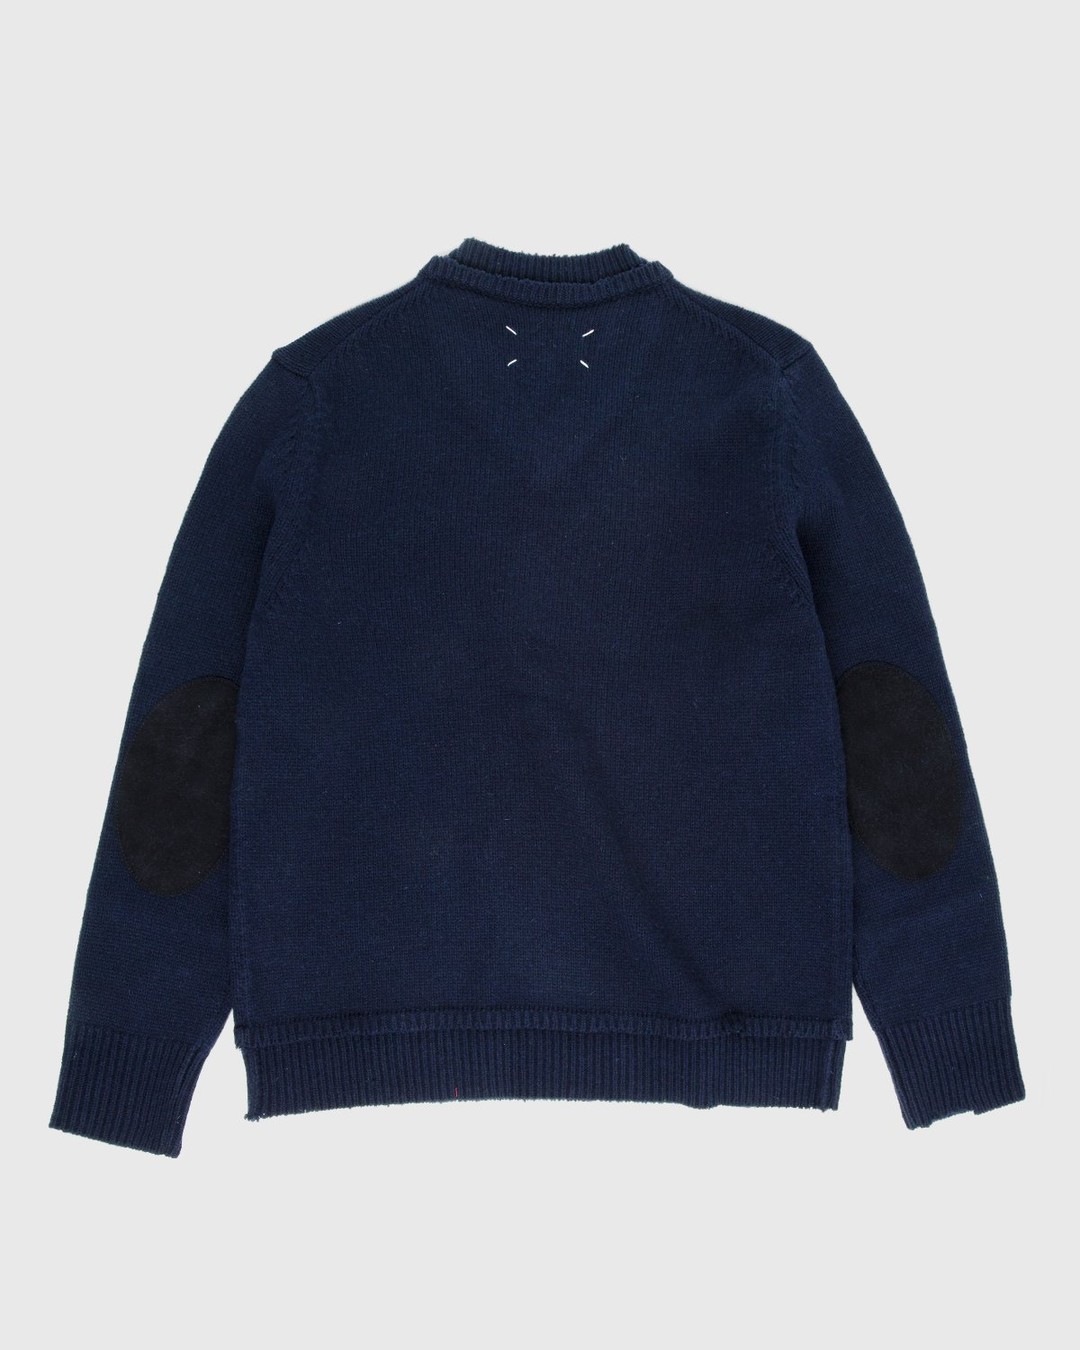 Maison Margiela – Sweater Navy - Knitwear - Blue - Image 2